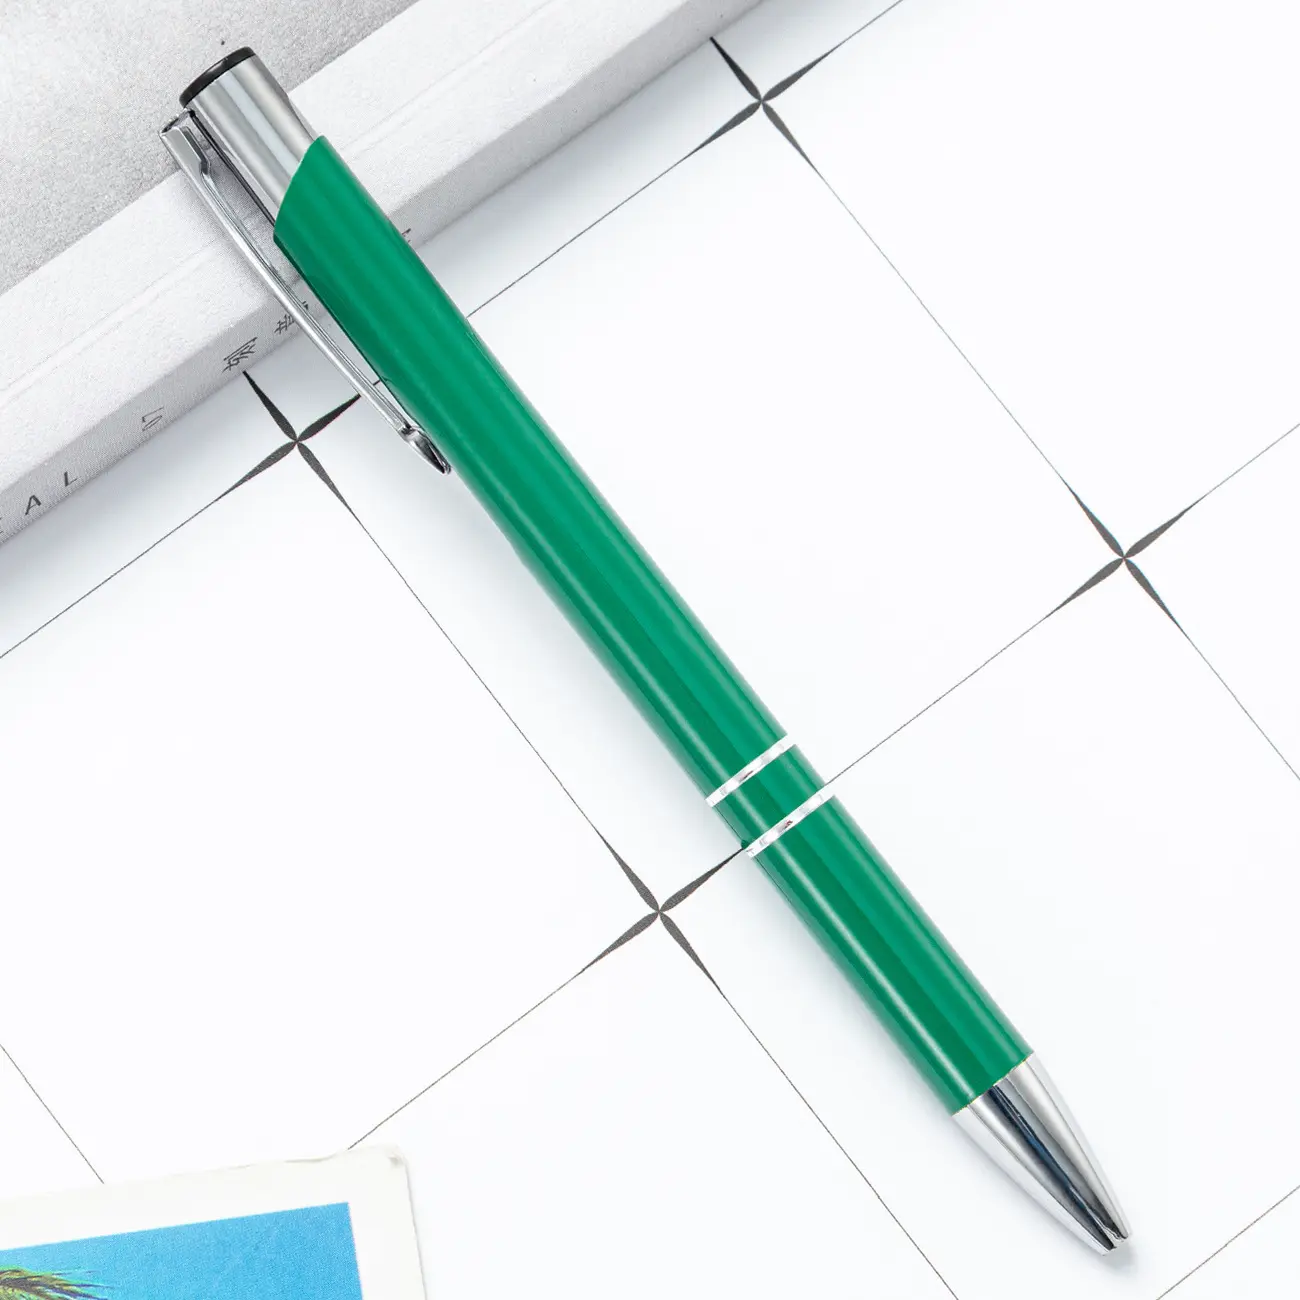 جديد ترويج كرة رخيصة نقطة أقلام معدنية مع شخصية مخصص الليزر منقوش طباعة وصفت شعار الصانع الحبر هدية